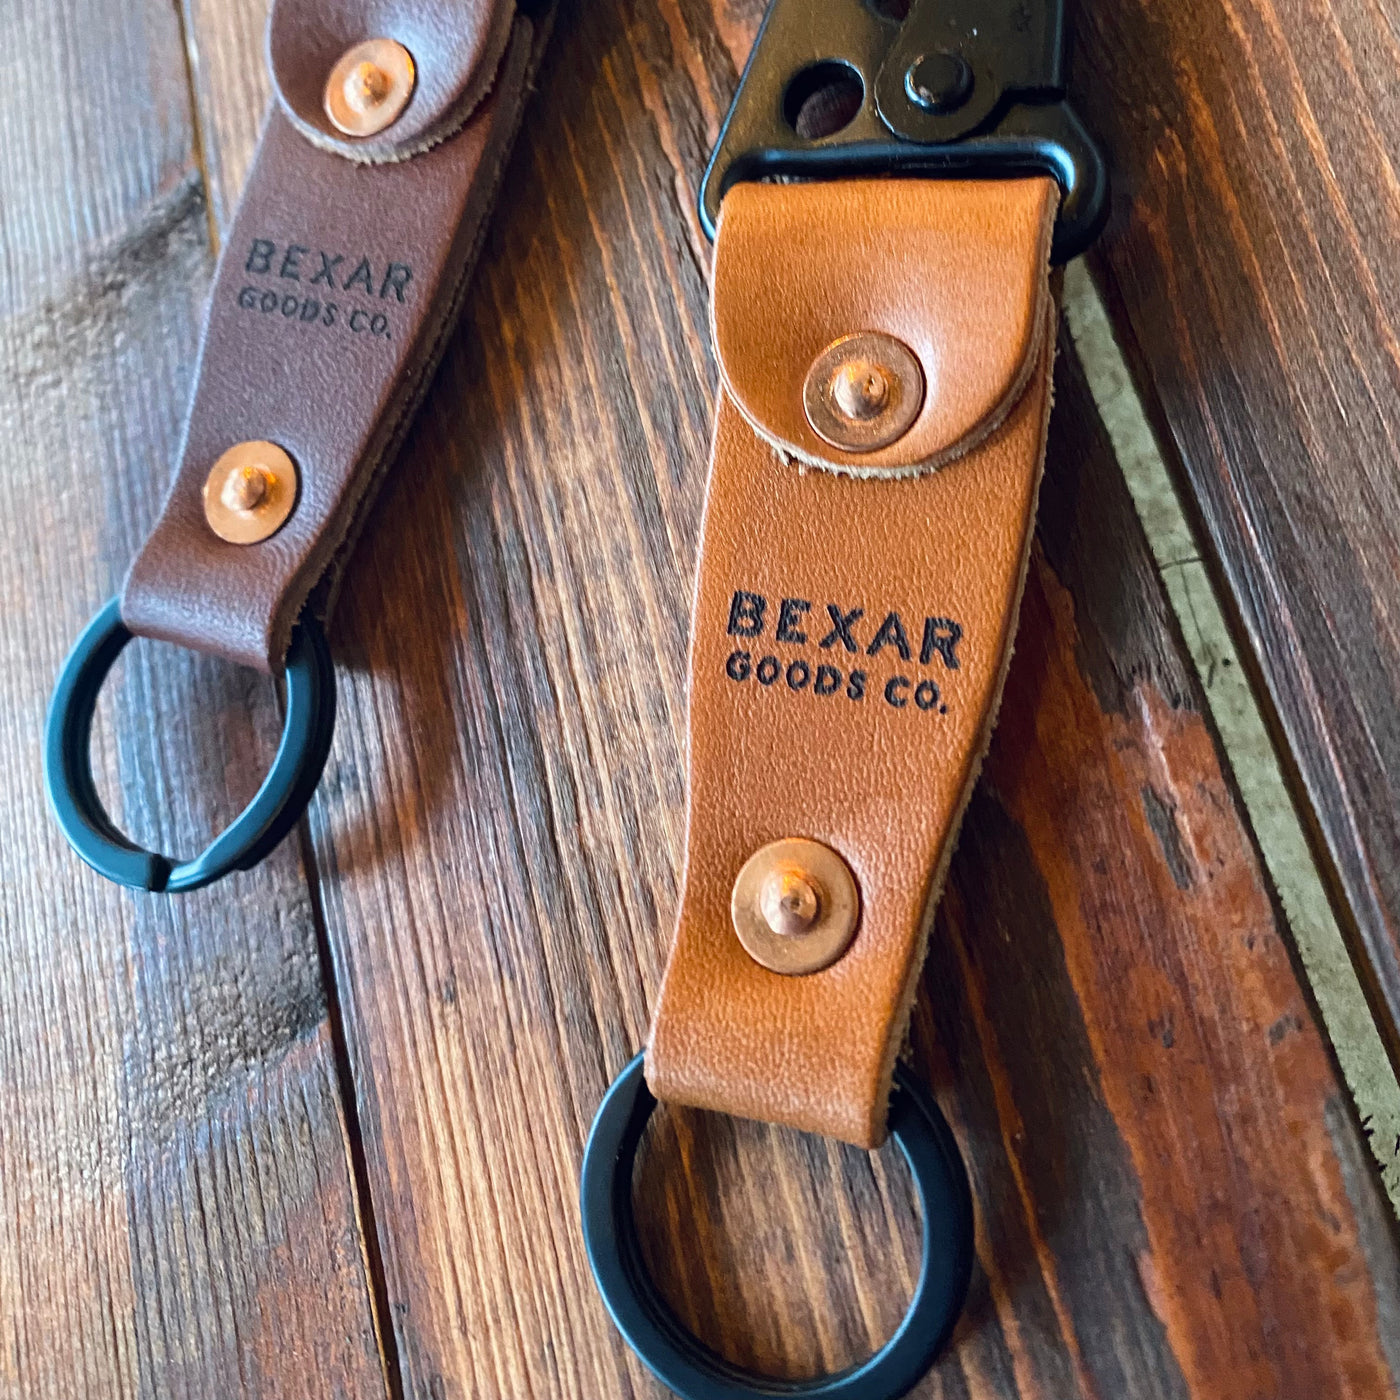 Bexar goods - Gorilla keeper - keychain